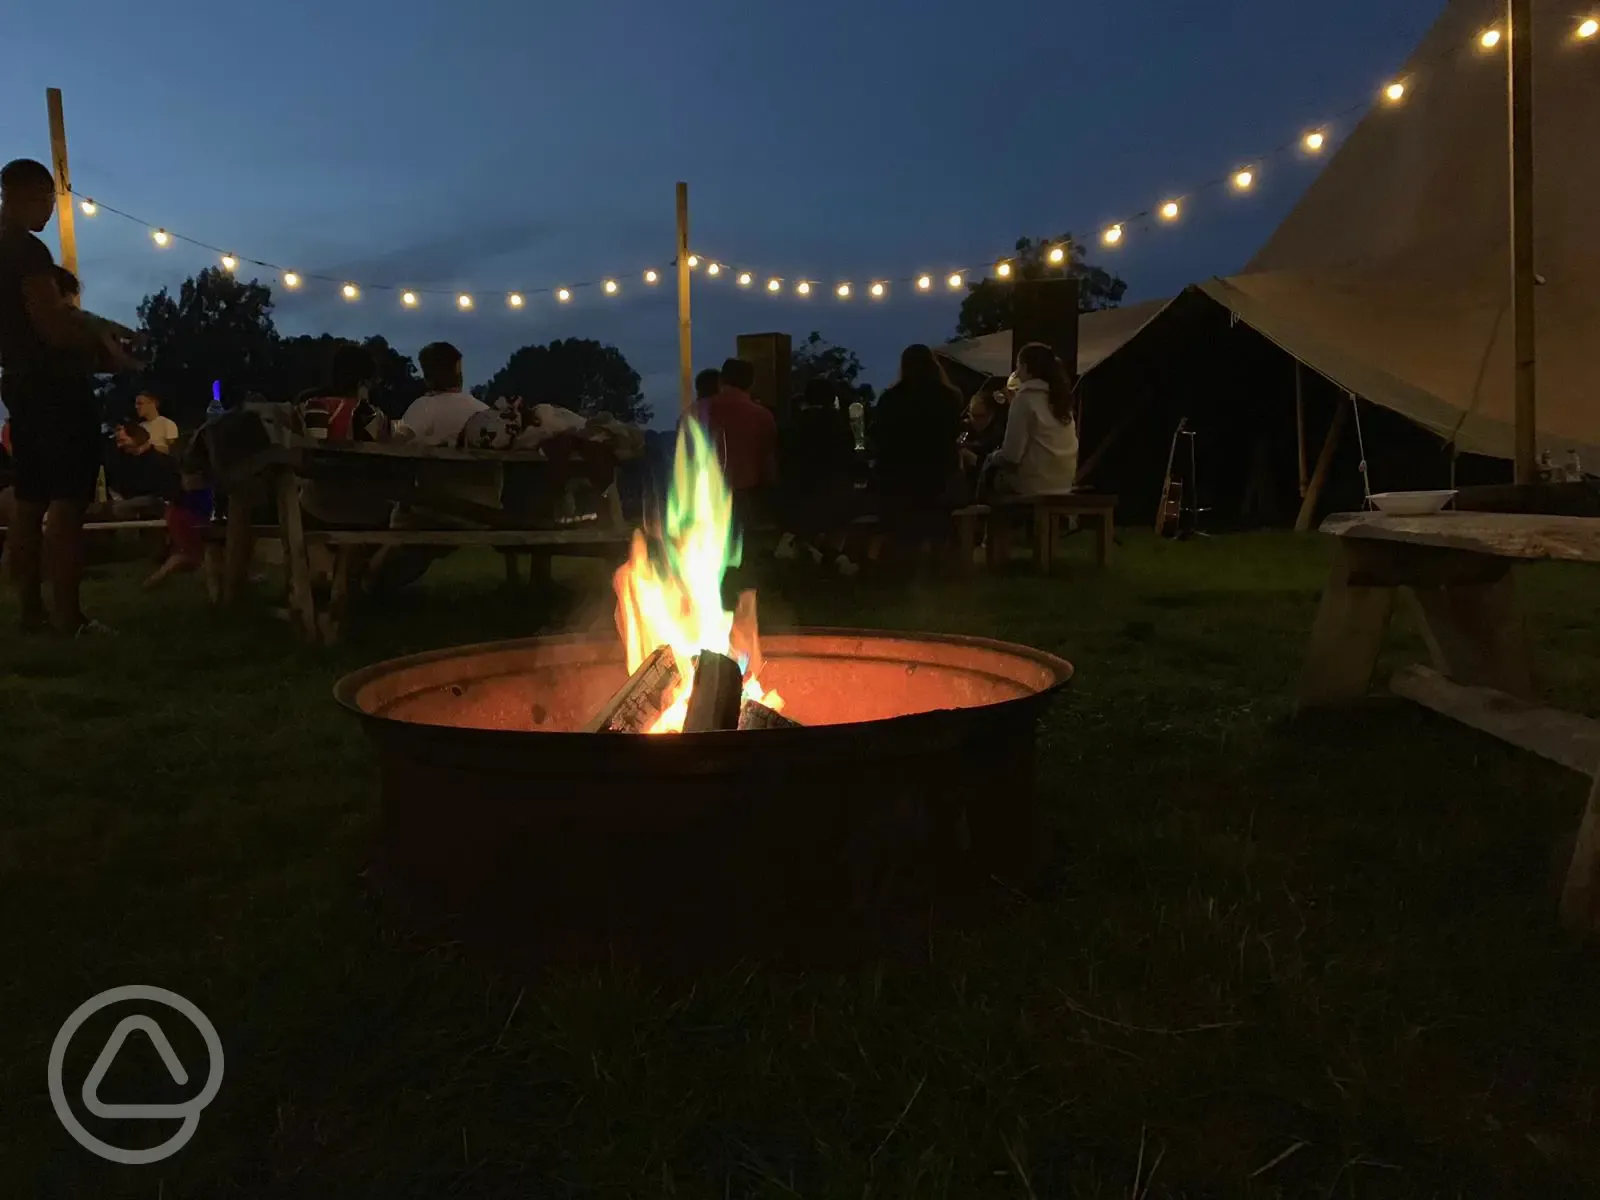 Campfires at Bedgebury Camping